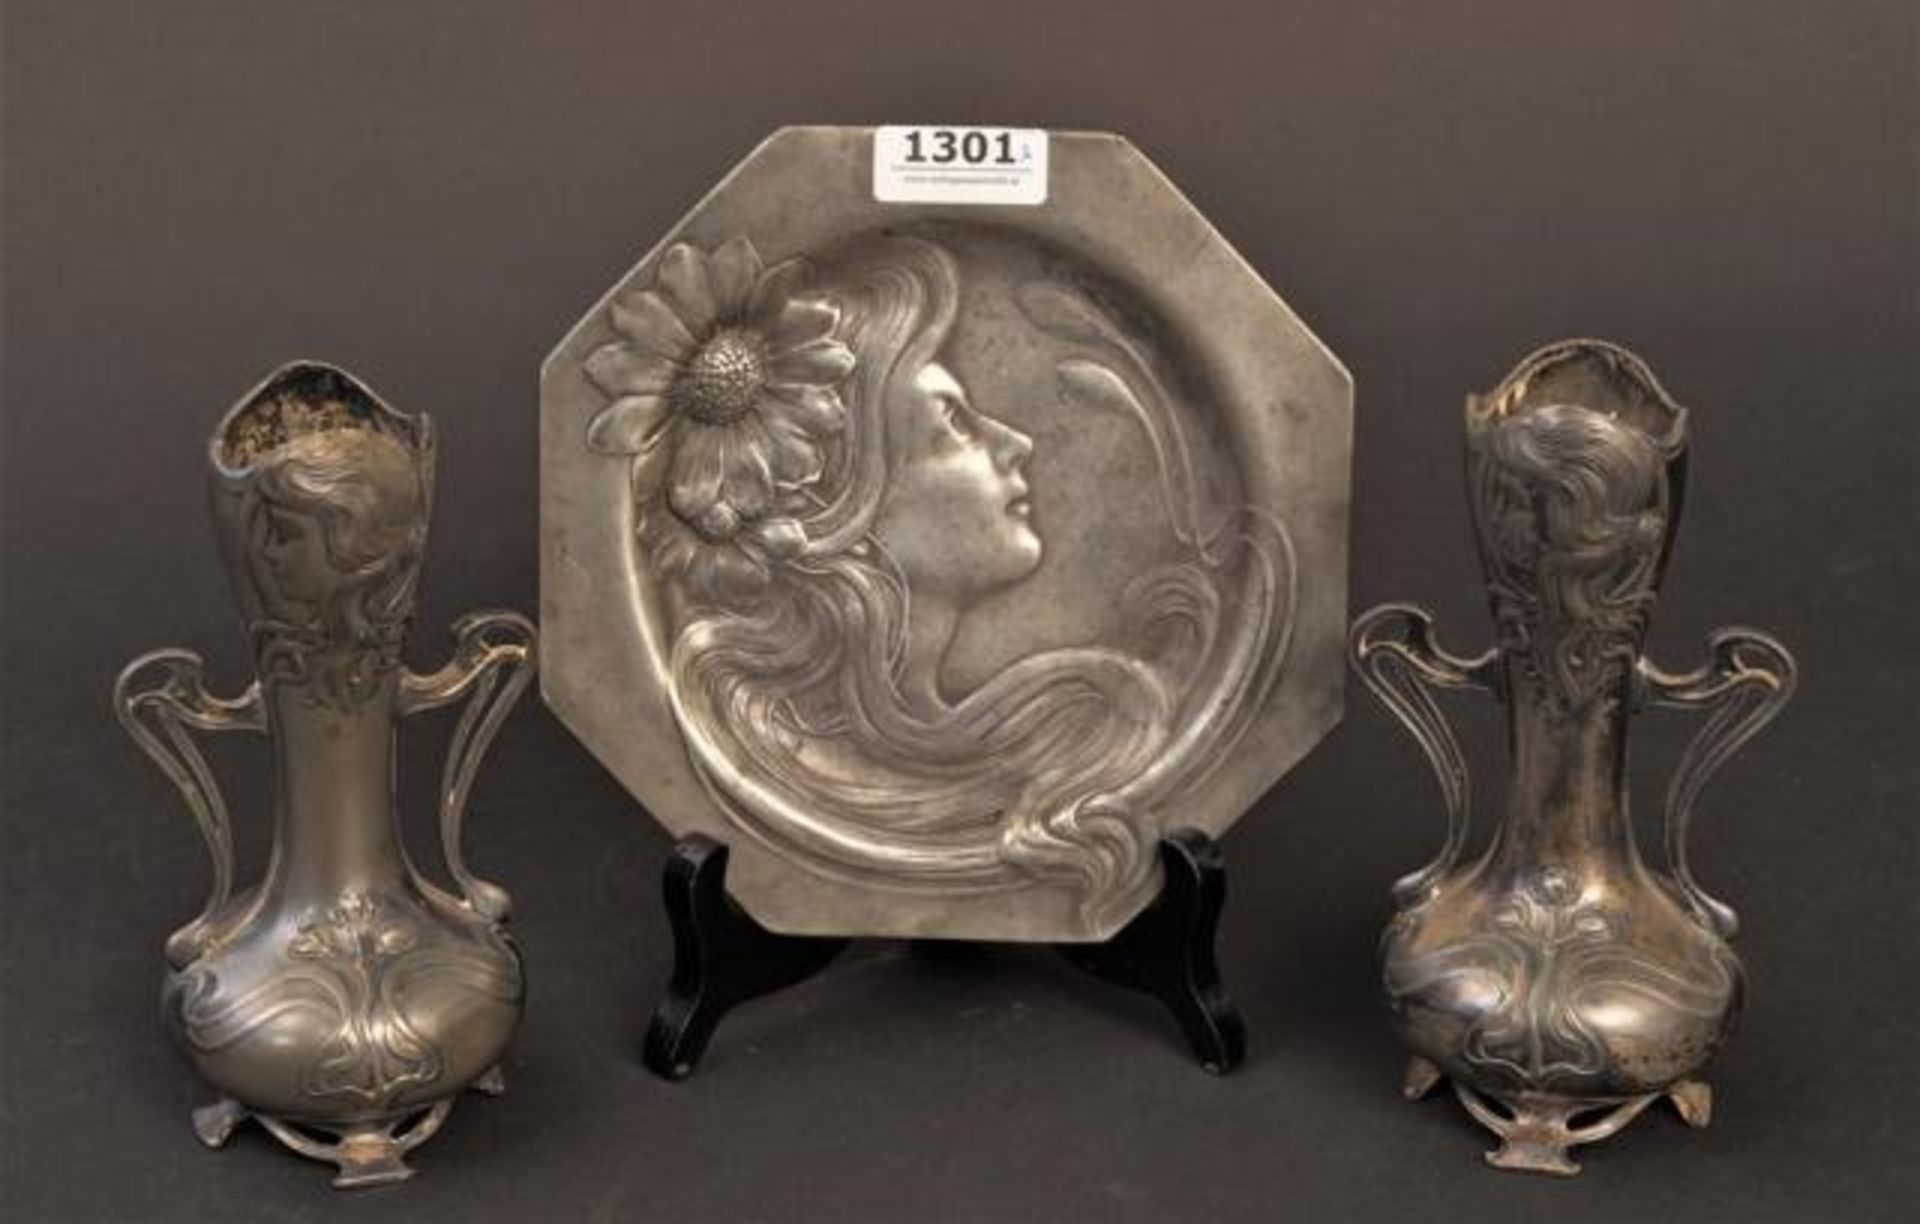 Pewter plate, l. 17 cm + Two pewter art nouveau vases, h. 14,5 cm. (3x)